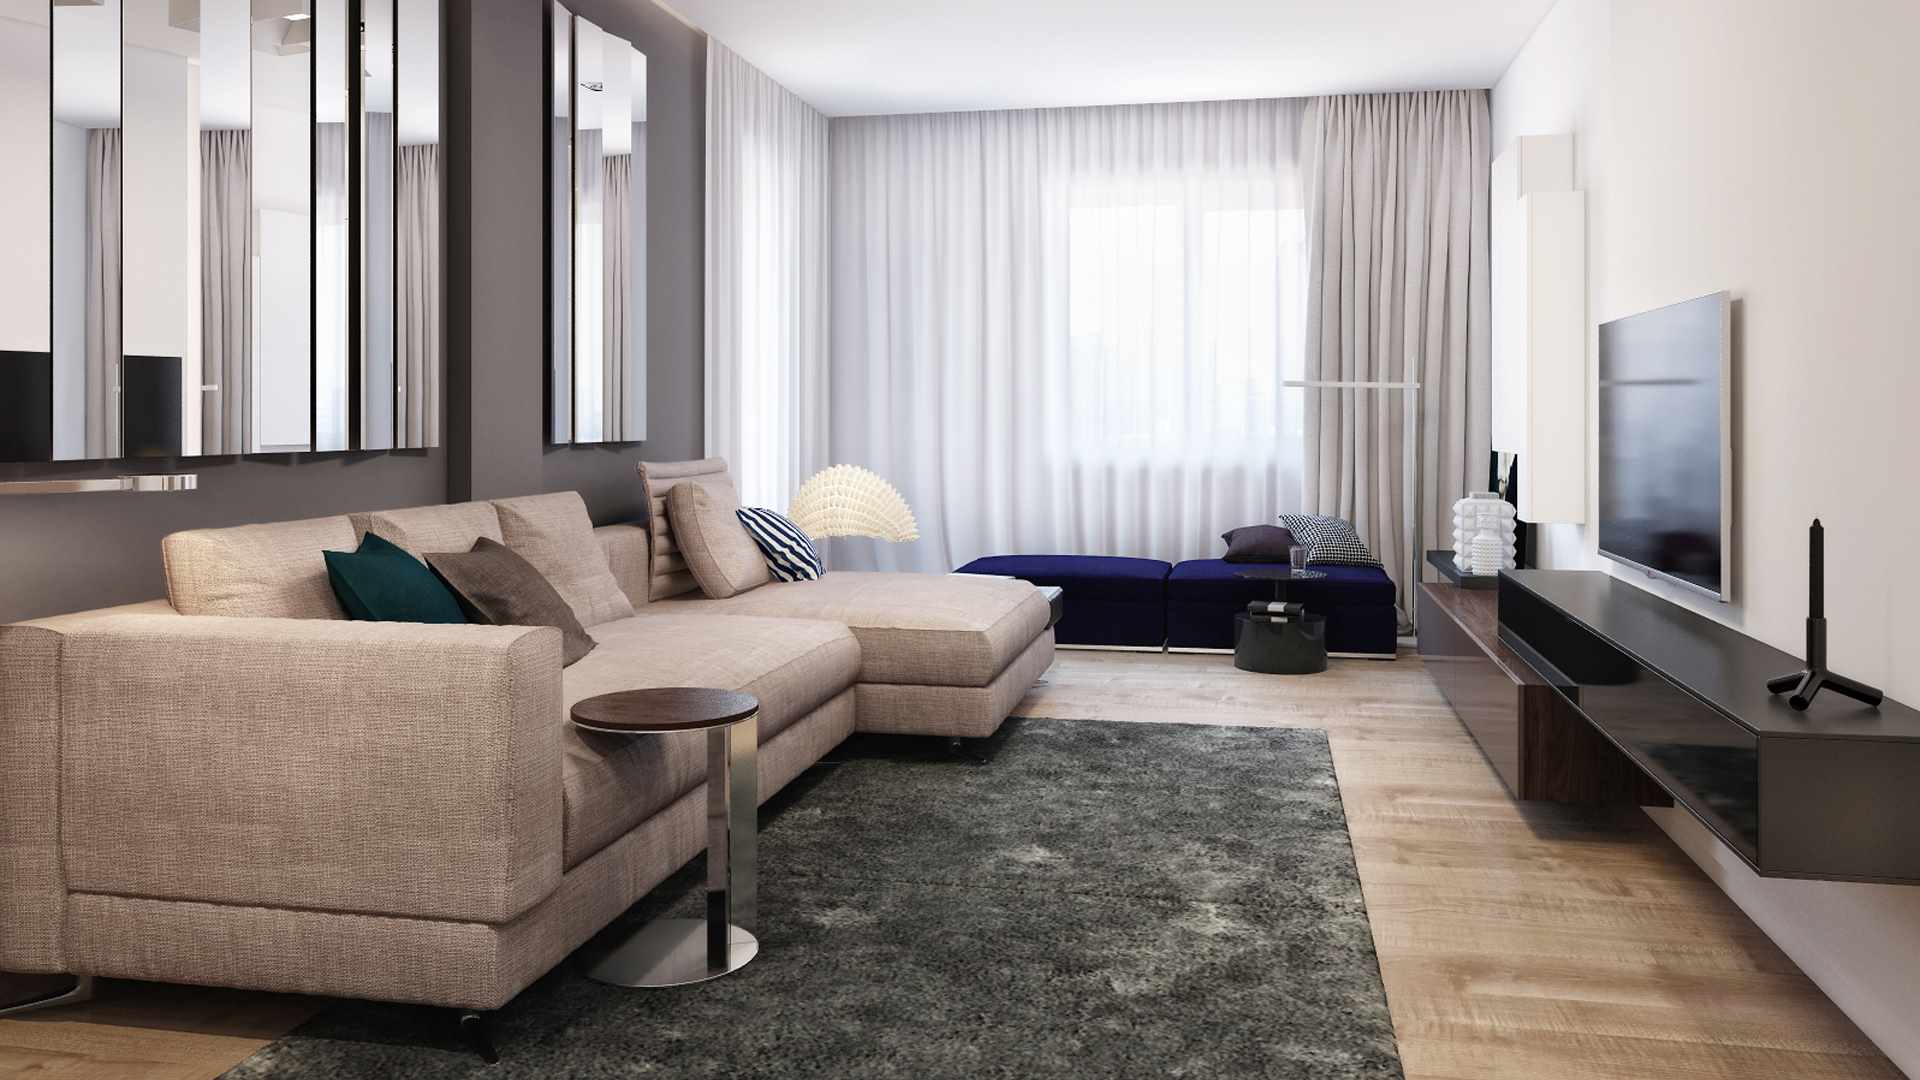 Un ejemplo del uso de un interior luminoso de una sala de estar al estilo minimalista